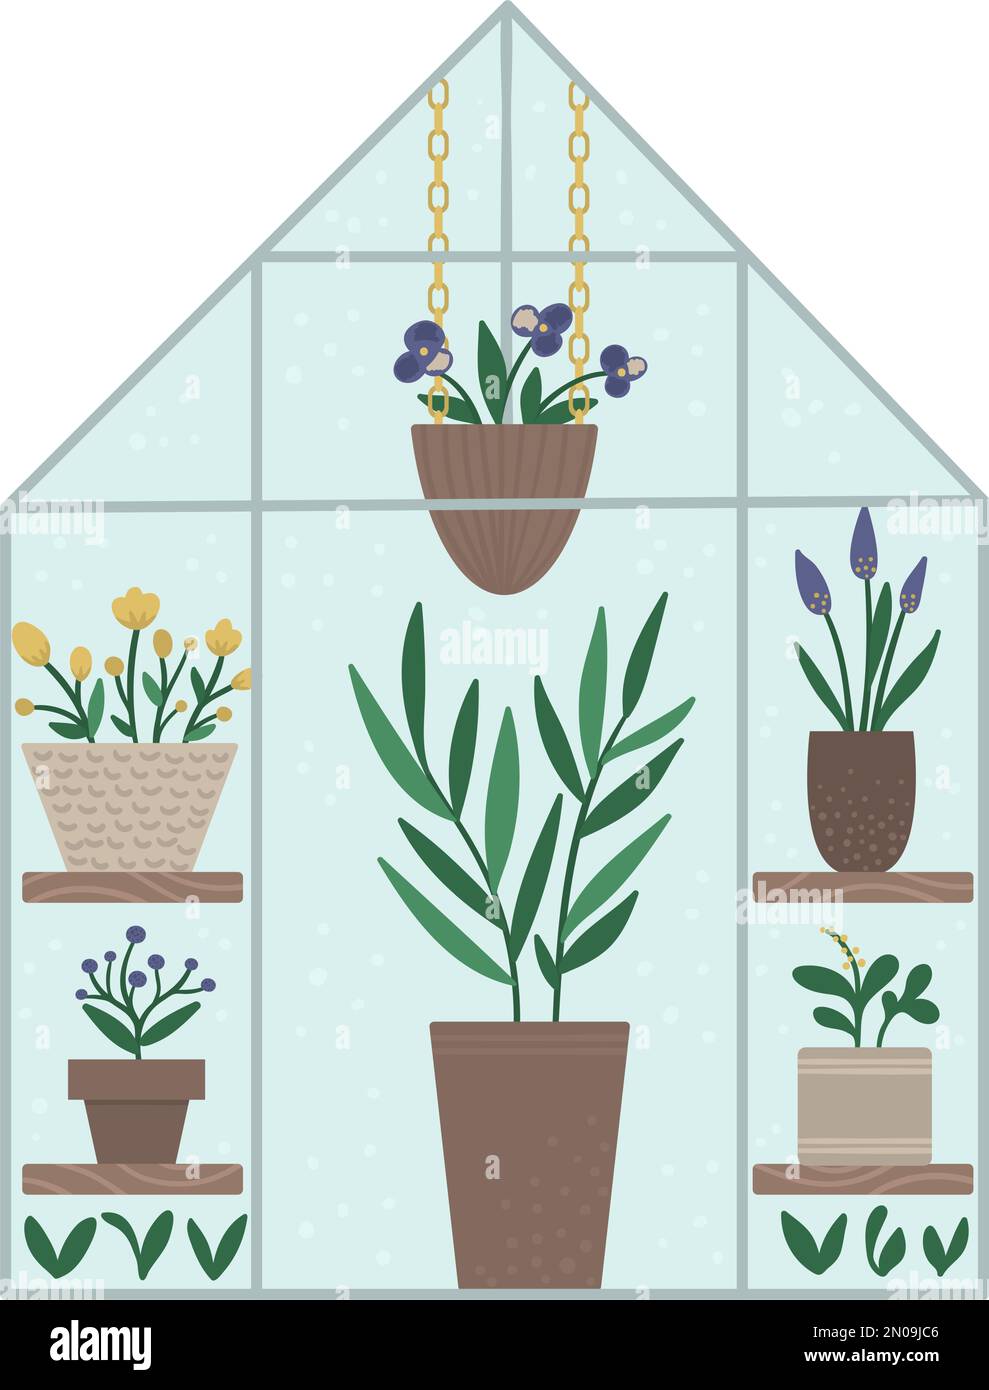 Vektorgewächse mit Pflanzen in Töpfen und Blumen. Abbildung eines flachen heißen Hauses isoliert auf weißem Hintergrund. Frontansicht Grünzimmerbild. Spring gard Stock Vektor